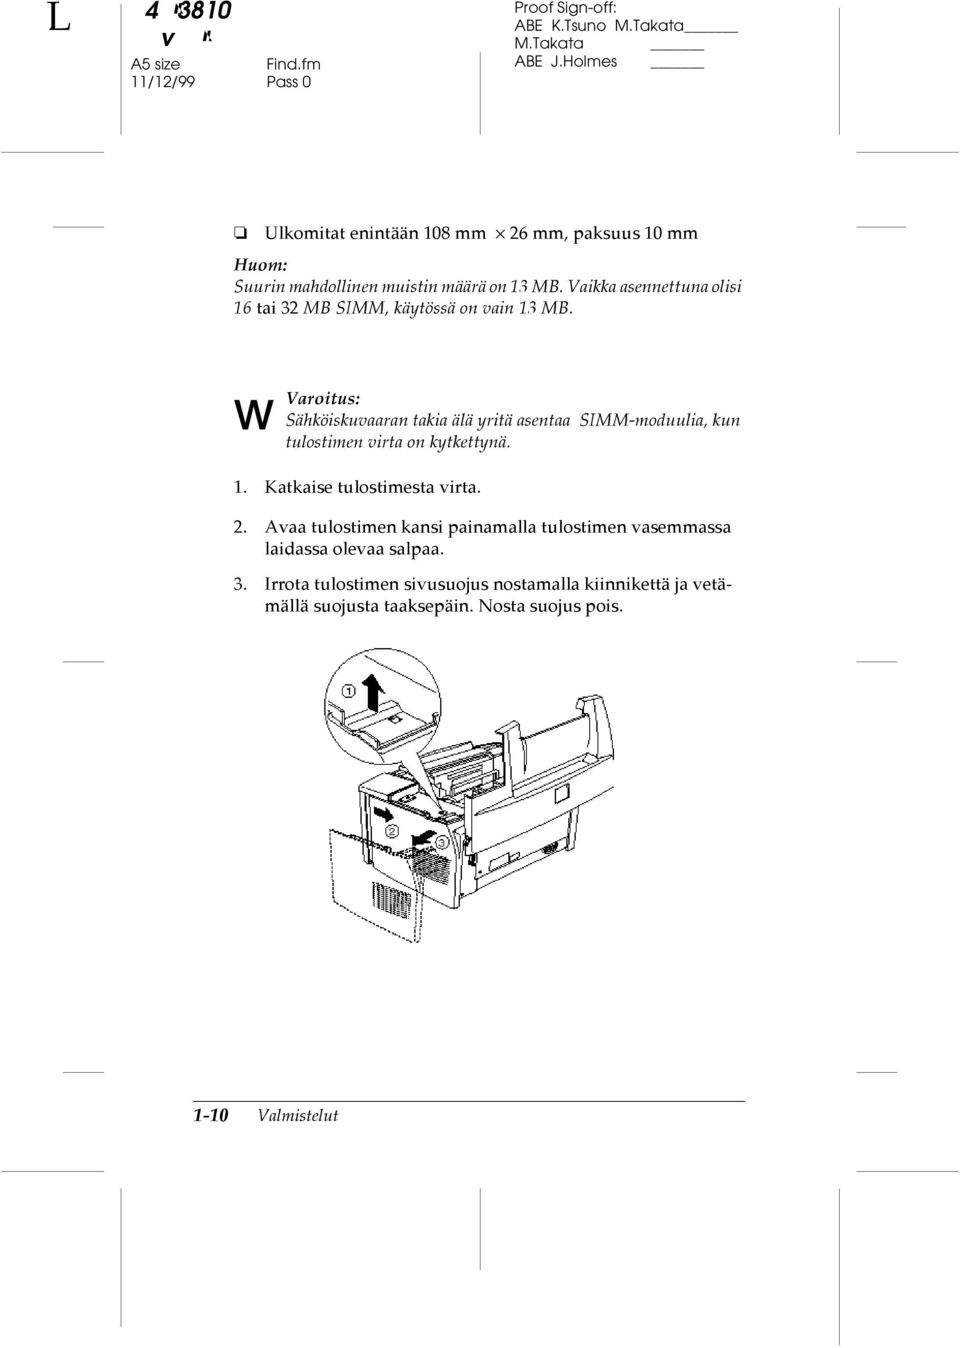 Asennus w Varoitus: Sähköiskuvaaran takia älä yritä asentaa SIMM-moduulia, kun tulostimen virta on kytkettynä. 1.